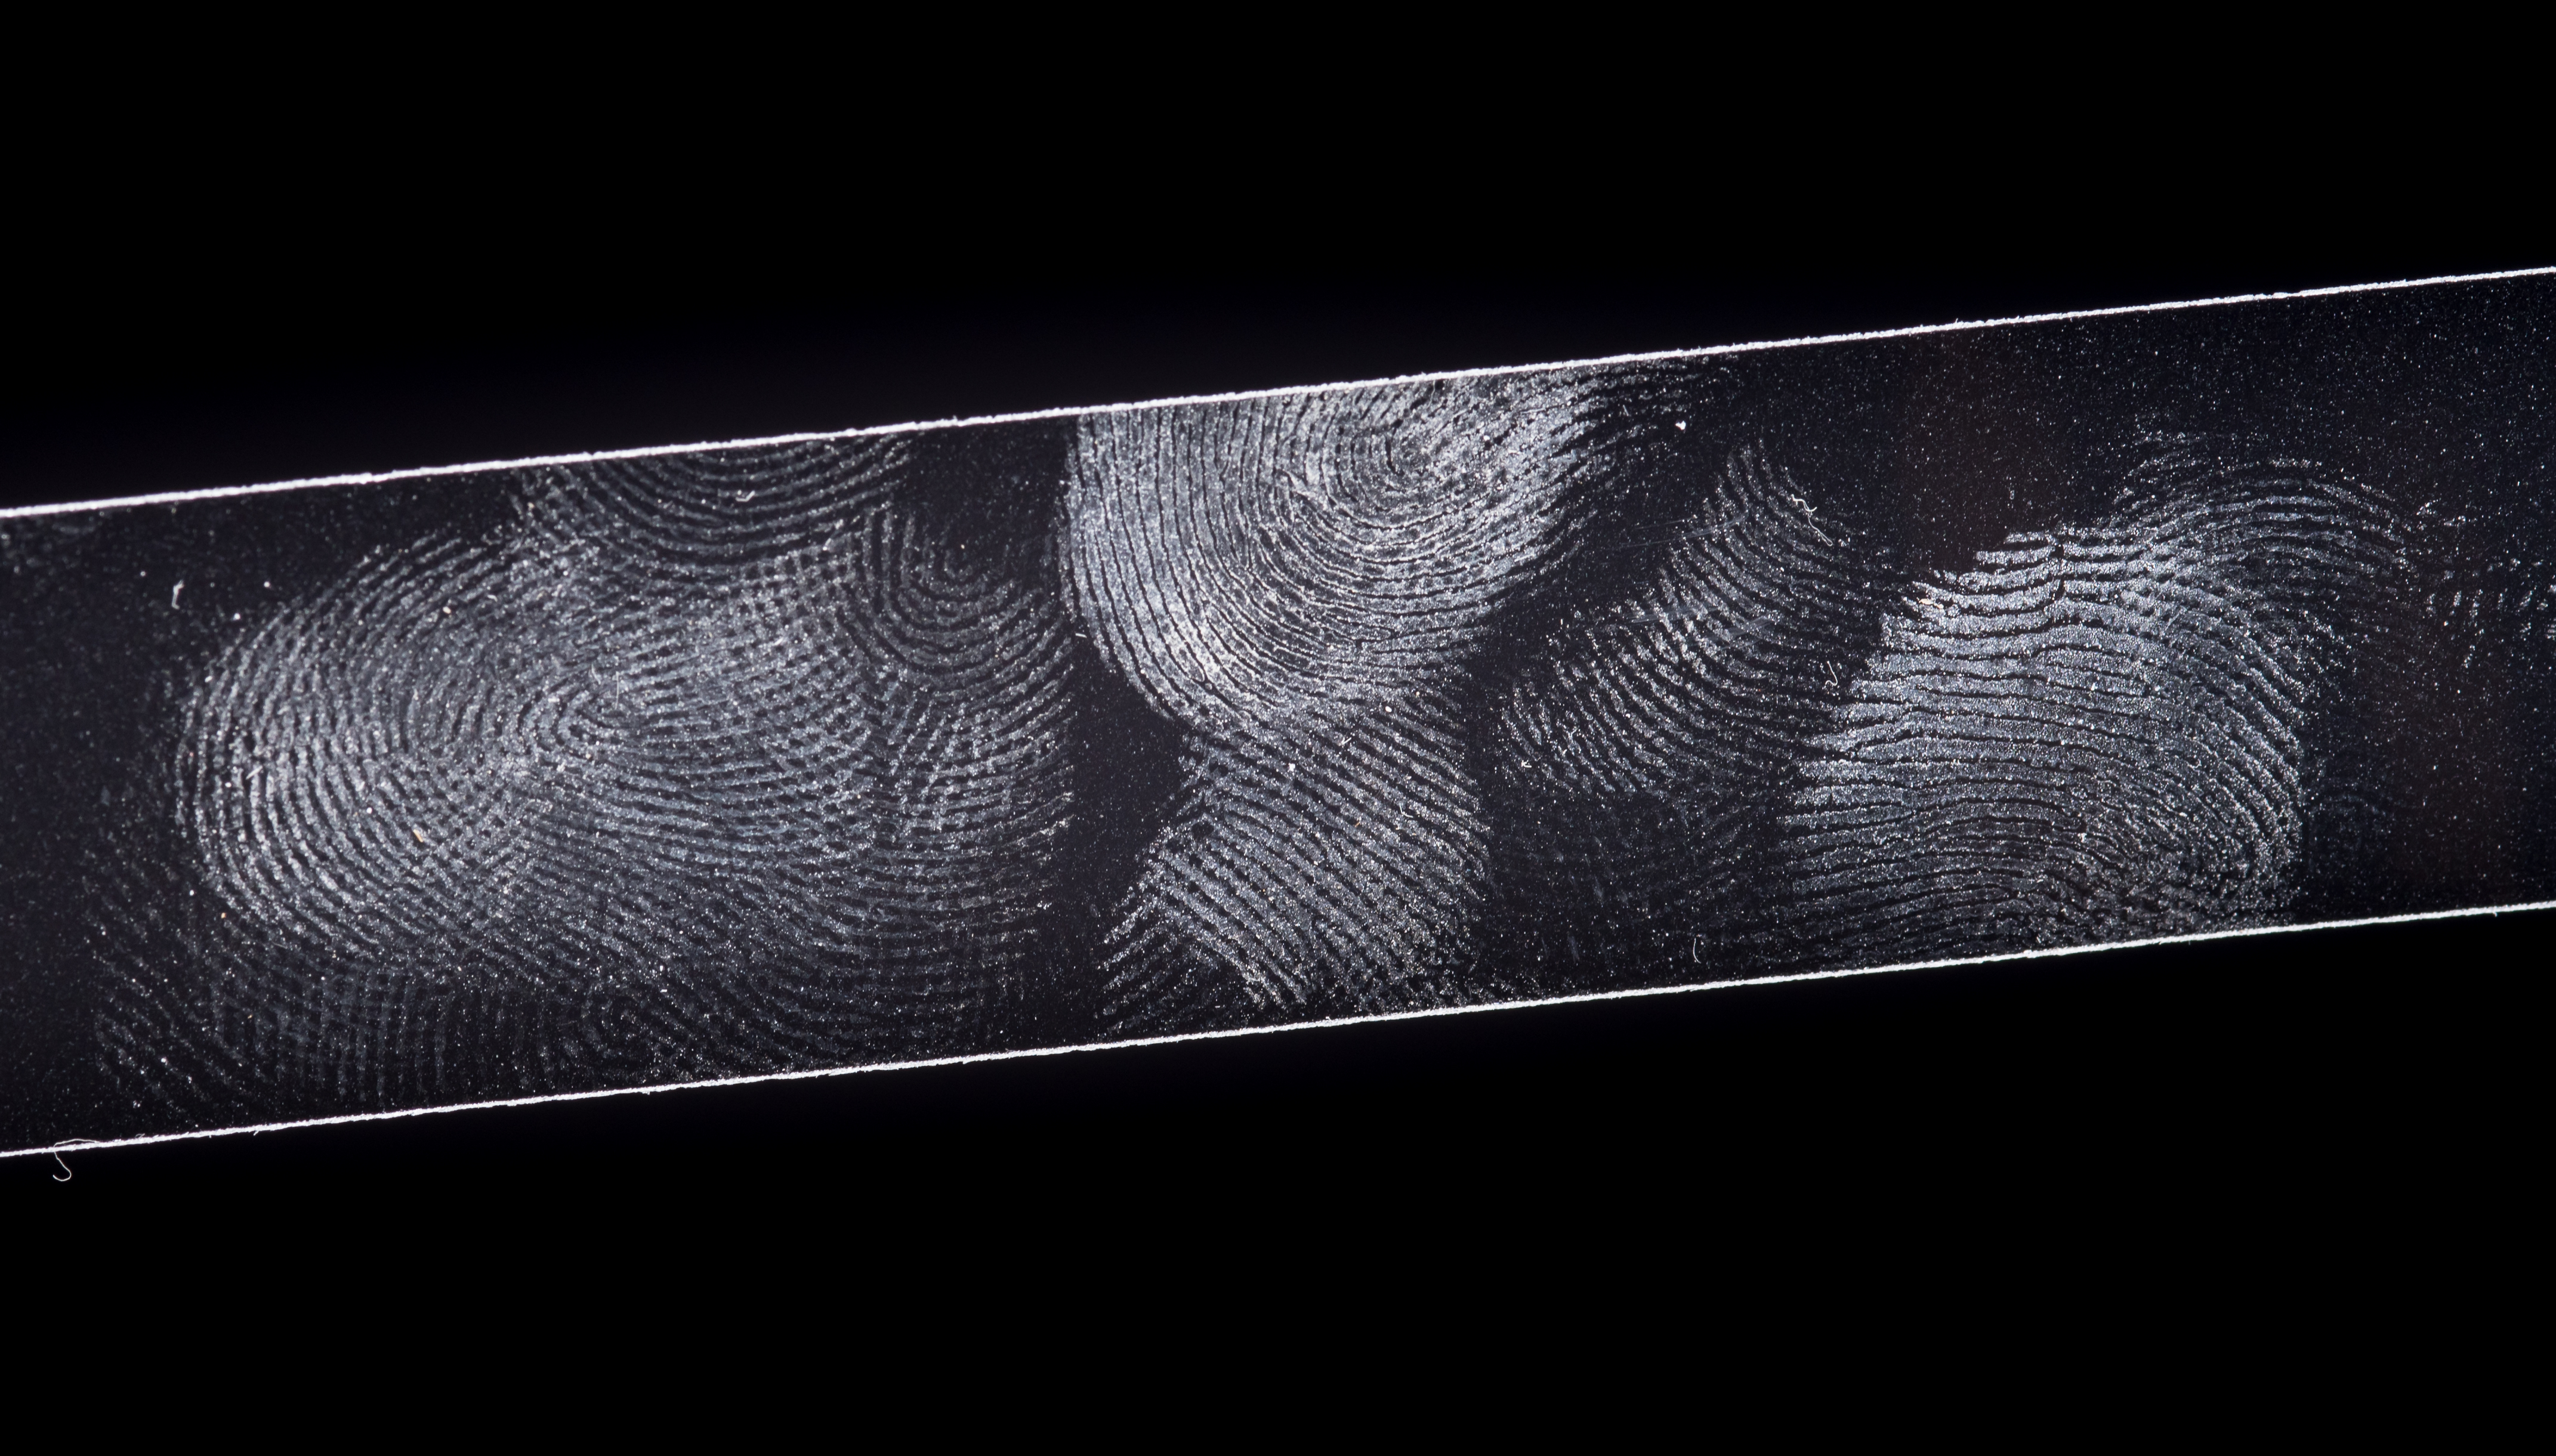 Fingerprints on a glass slide with a black background.